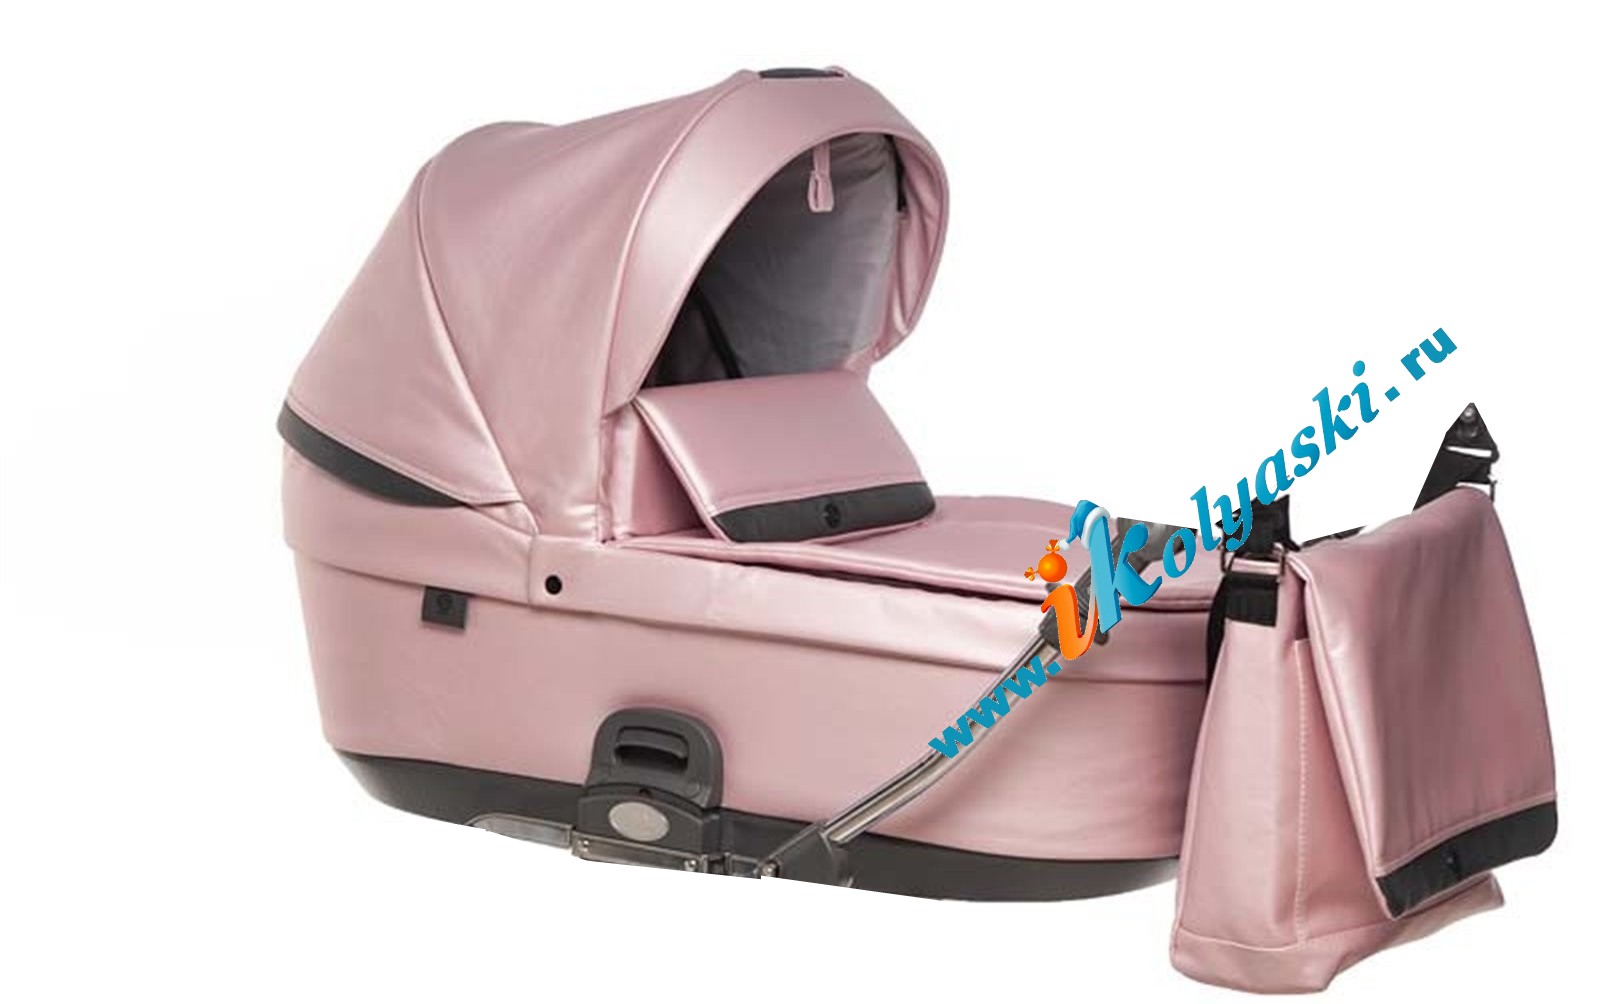 Коляска 2 в 1 Roan Bloom Pink Pearl для новорожденных - новинка 2020 - на фото люлька